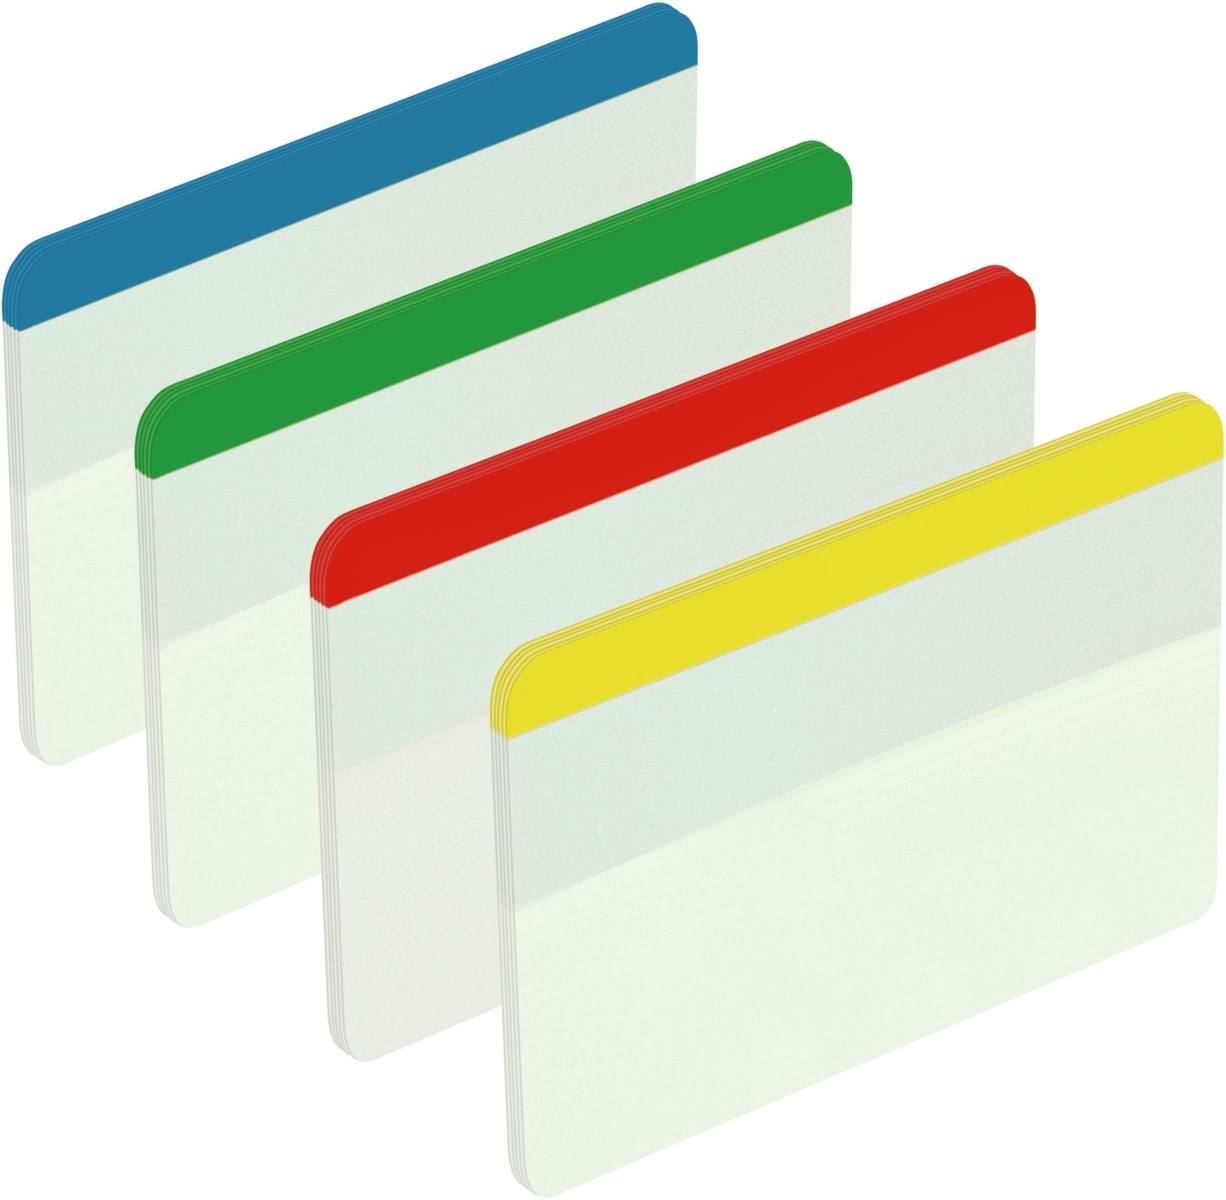 3M Post-it Index Strong 686-F1EU, 50,8 mm x 38 mm, sininen, keltainen, vihreä, punainen, 4 x 6 liimanauhaa